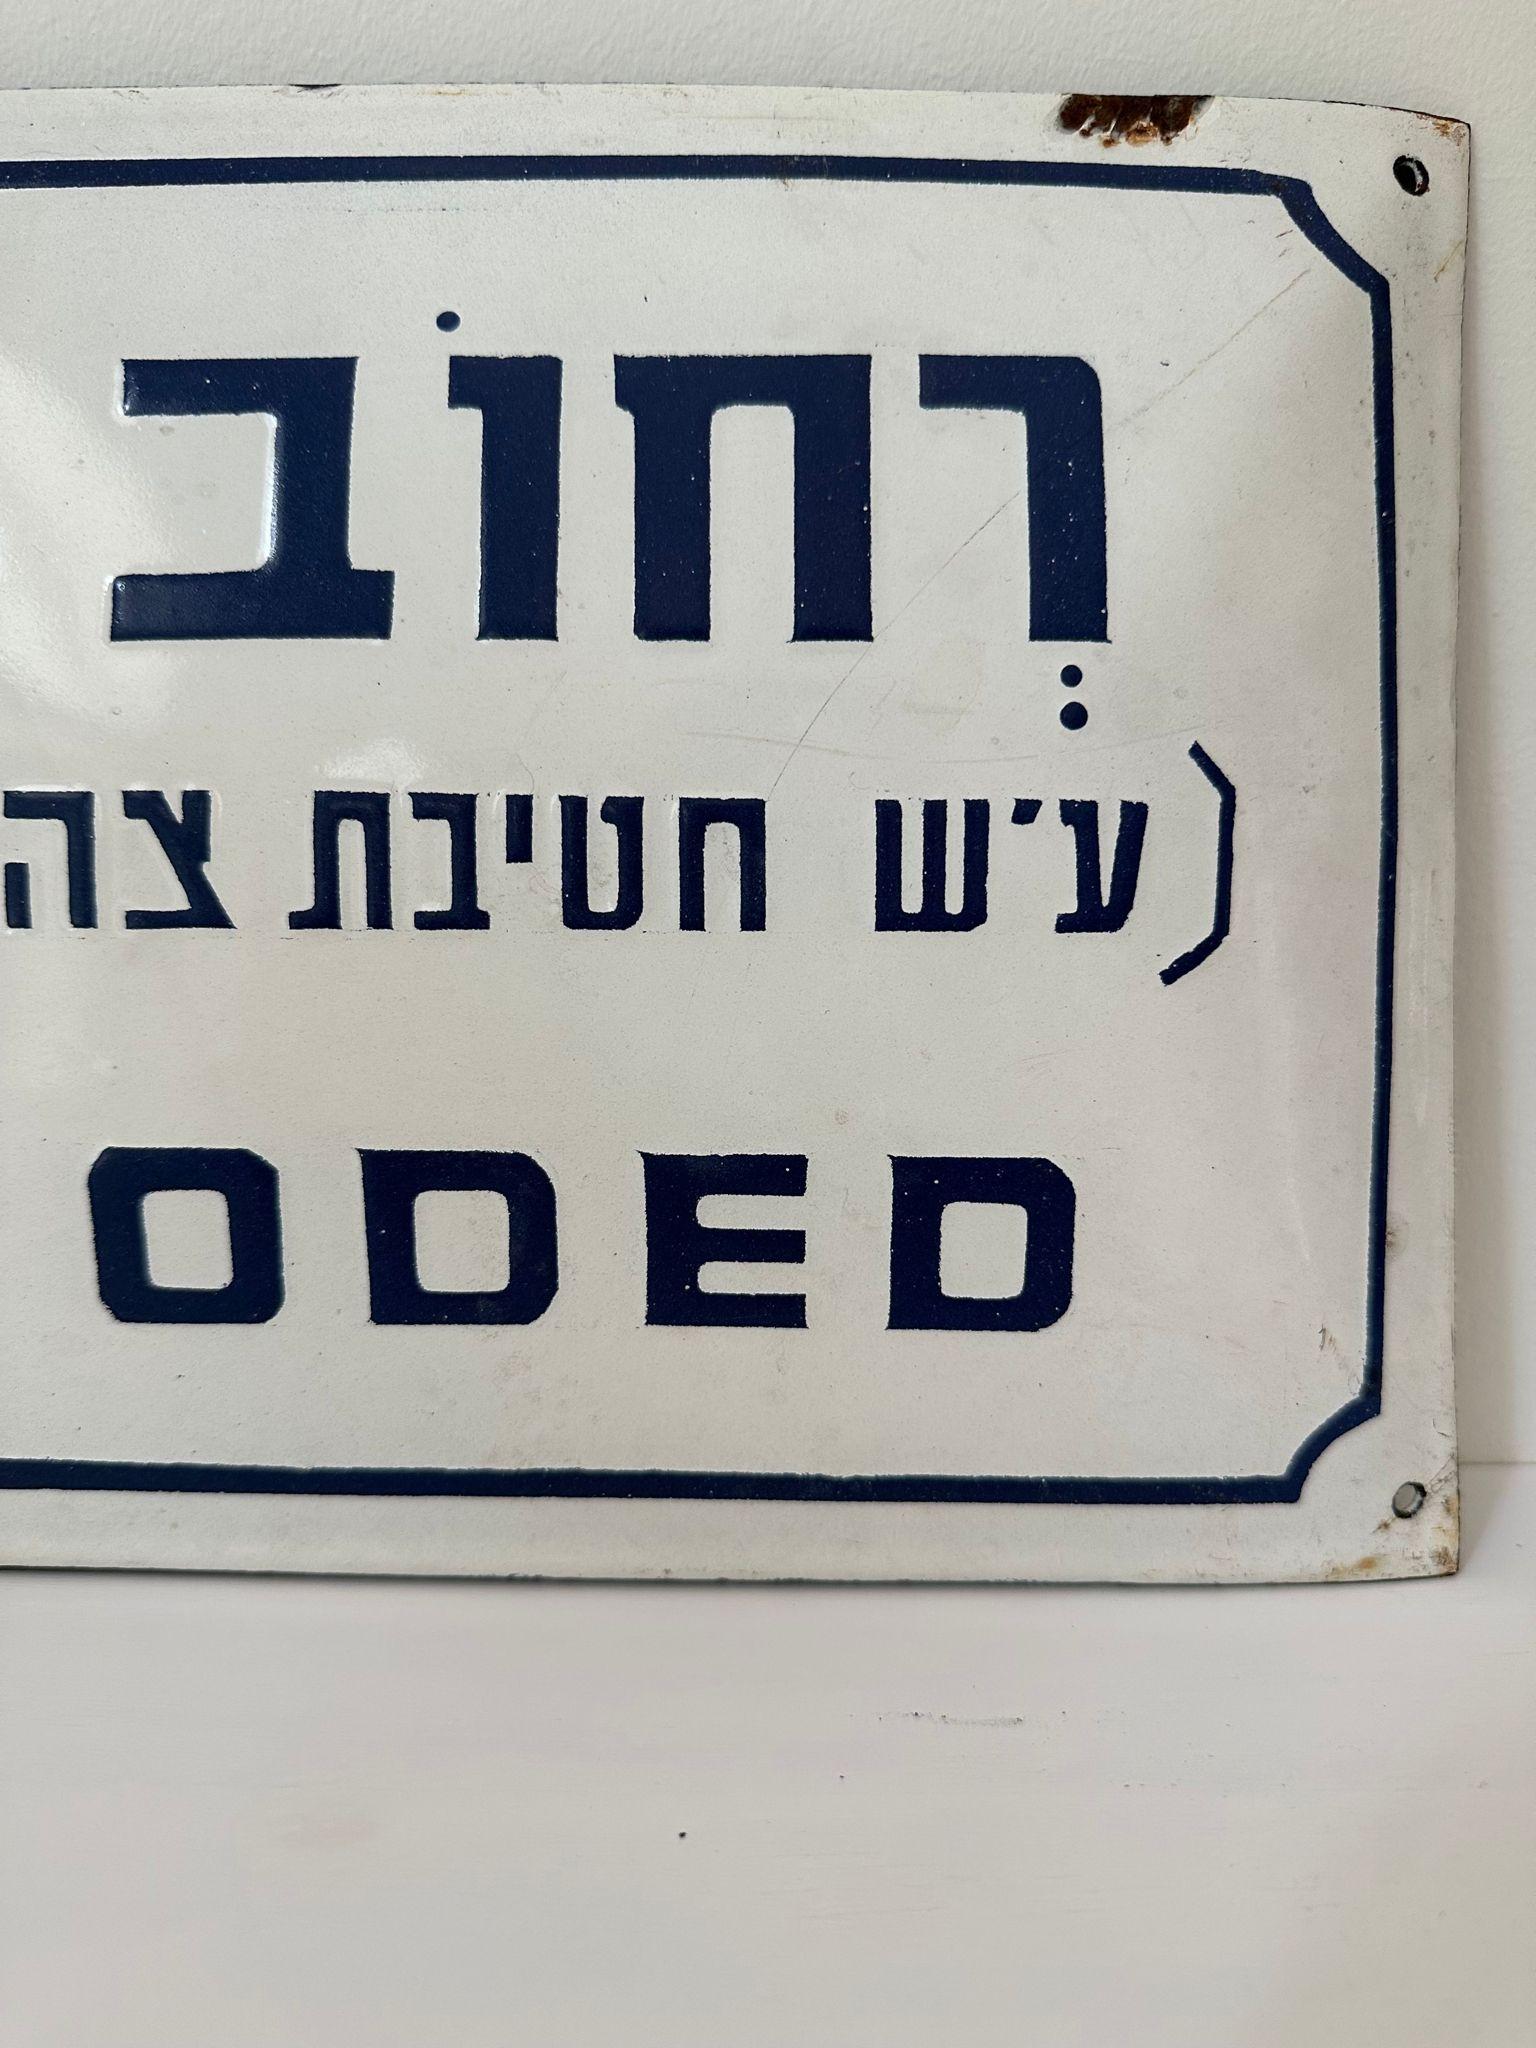 Mitte des 20. Jahrhunderts handgefertigtes israelisches Straßenschild. Dieses aus Emaille und Eisen gefertigte Straßenschild wurde kurz nach der Gründung des Staates Israel im Jahr 1948 geschaffen. Das Zeichen ist in kugelblauen Buchstaben auf